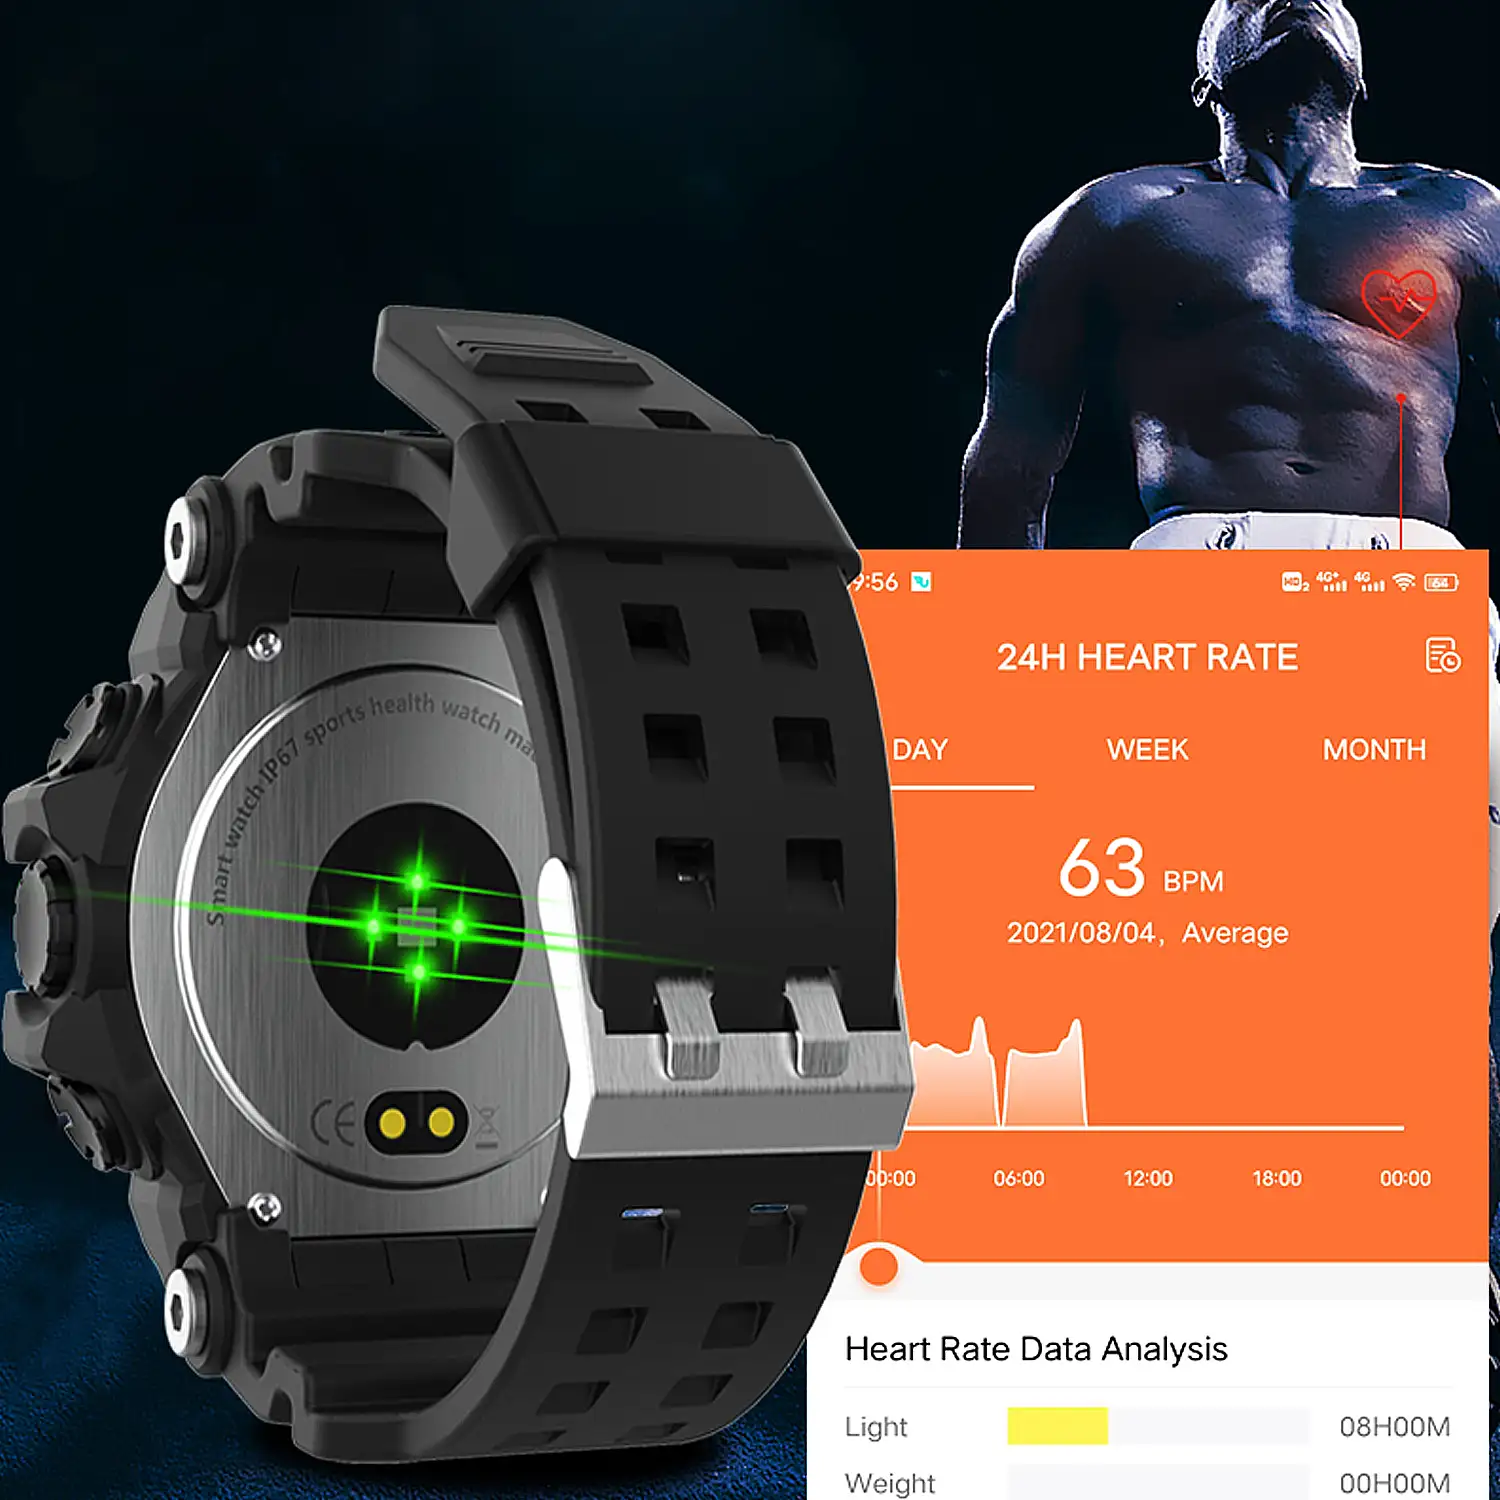 Smartwatch LC11 estilo digital clásico. Con notificaciones, monitor cardiaco, de tensión y O2 en sangre, varios modos deportivos.